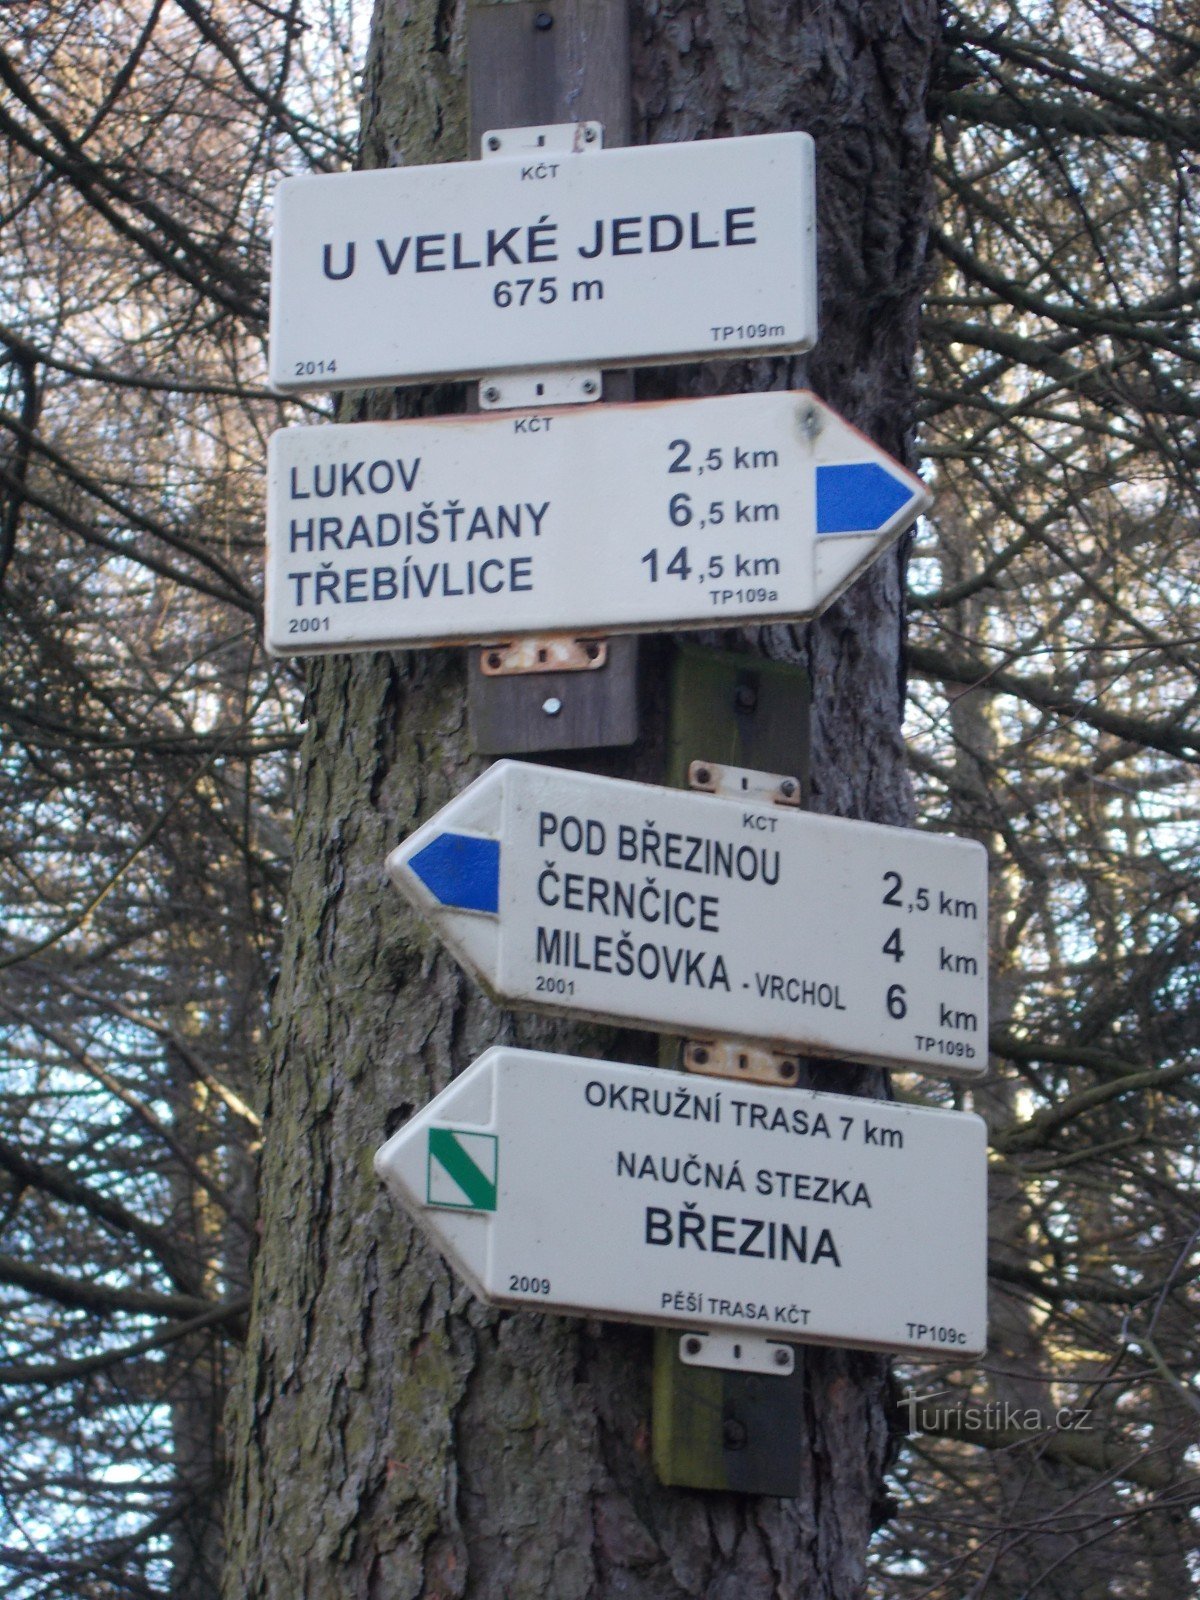 Πινακίδα στο Velká Jedle.